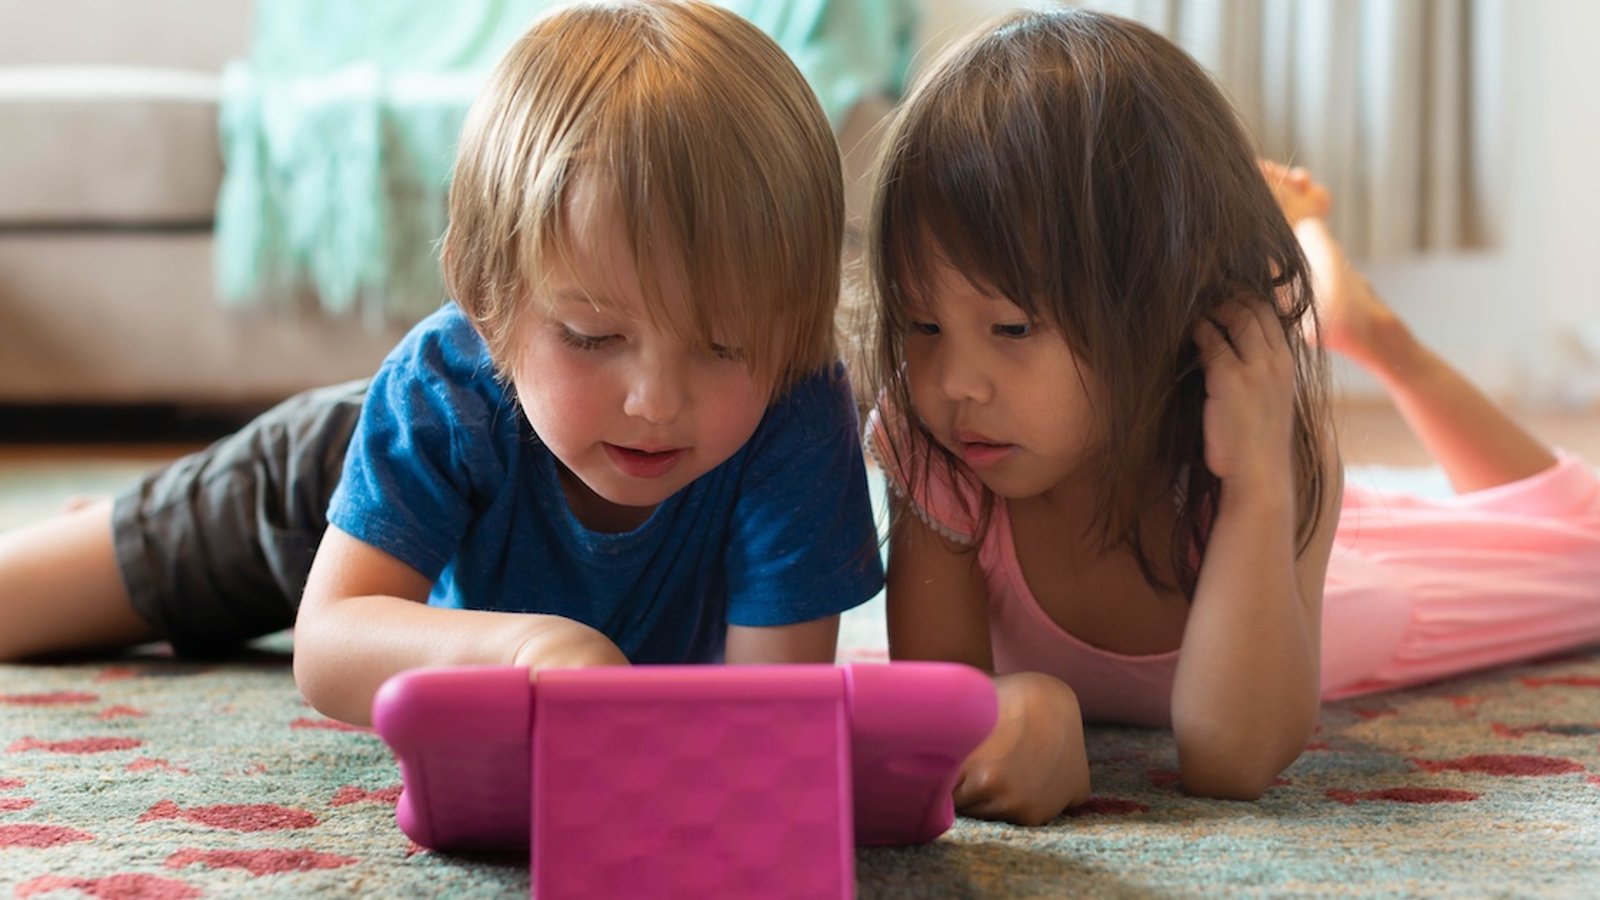 Selon des chercheurs québécois, les écrans nuisent à régulation de leurs émotions des jeunes enfants